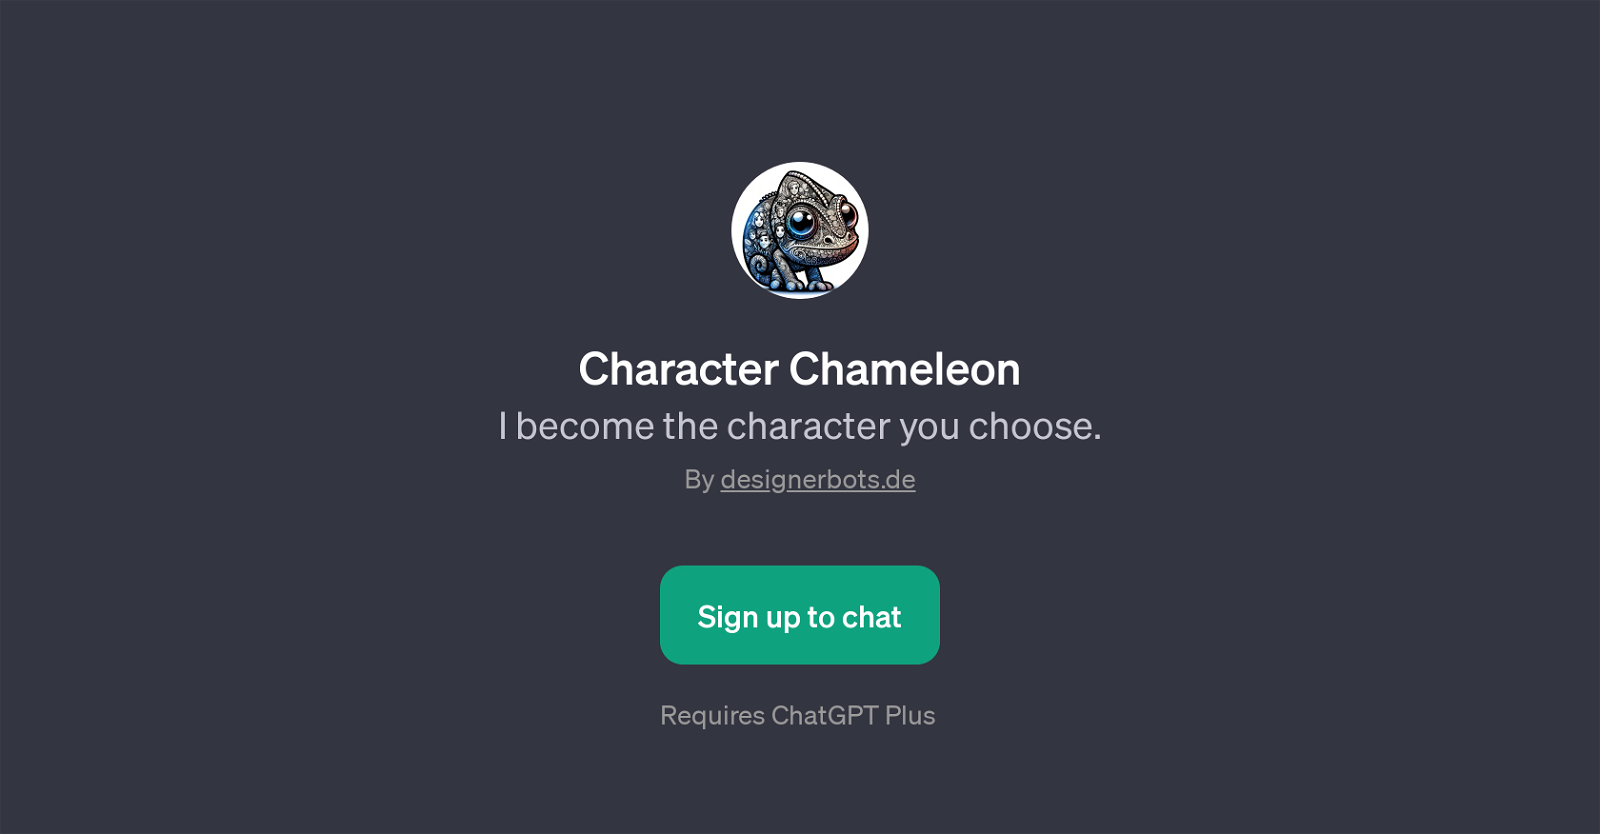 Character Chameleon website